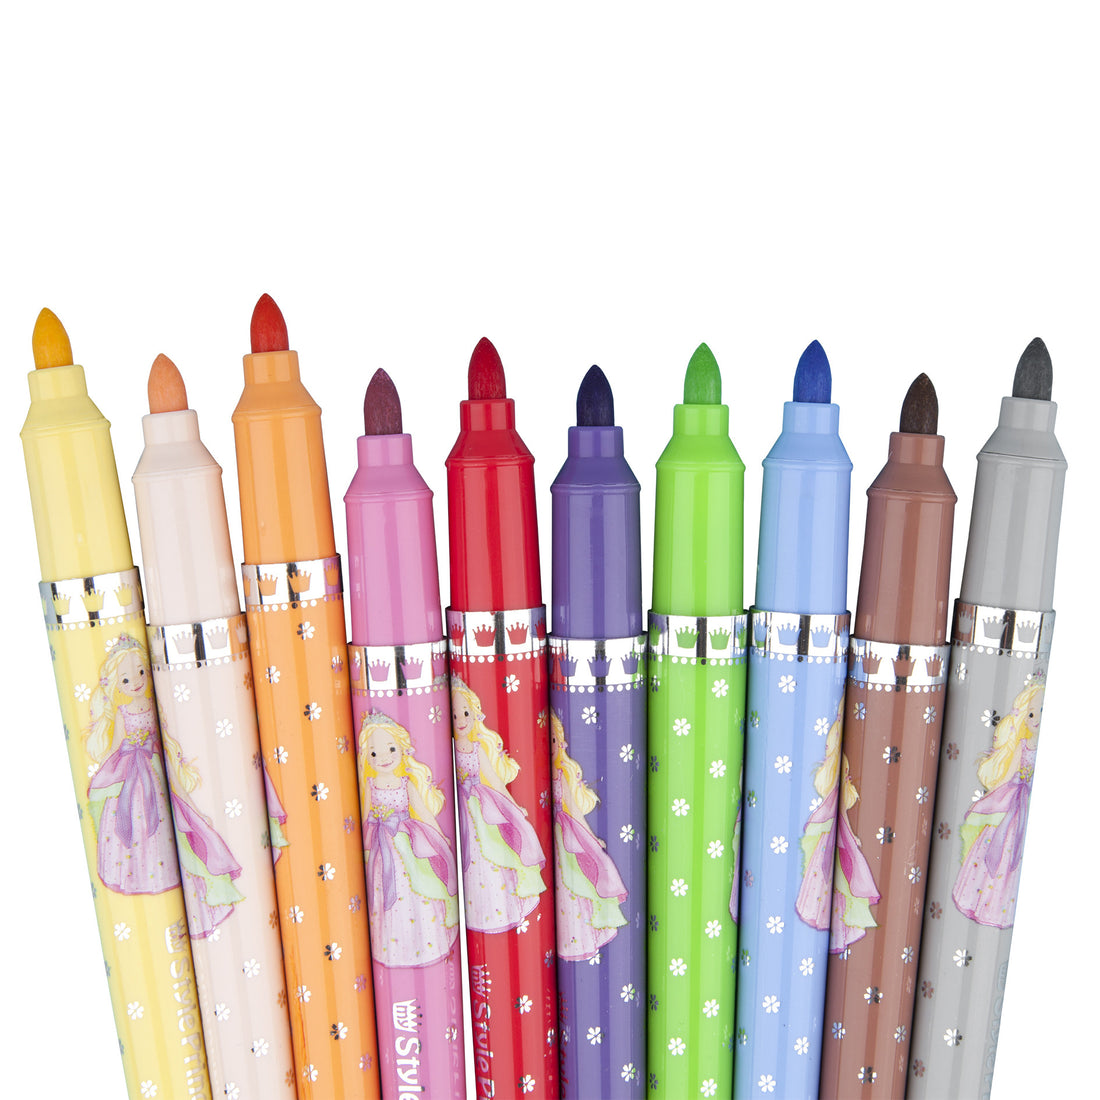 depesche-princess-felt-tip-pens-10-colors- (3)